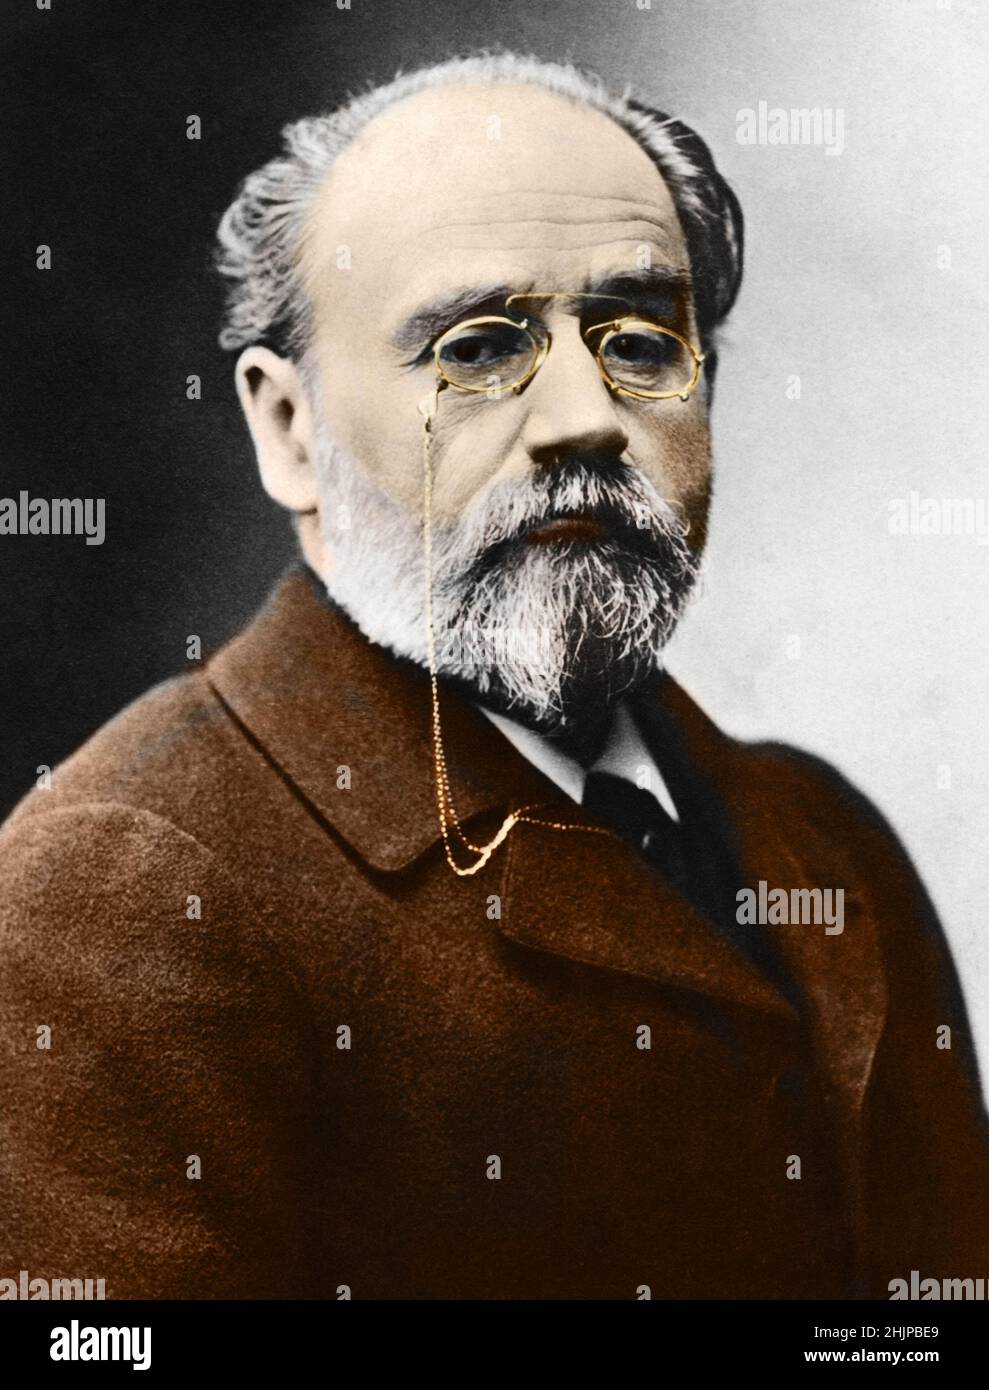 Portrait de l'ecrivain francais Emile Zola (1840-1902) Photographie 1900 environ Collection privee Stock Photo